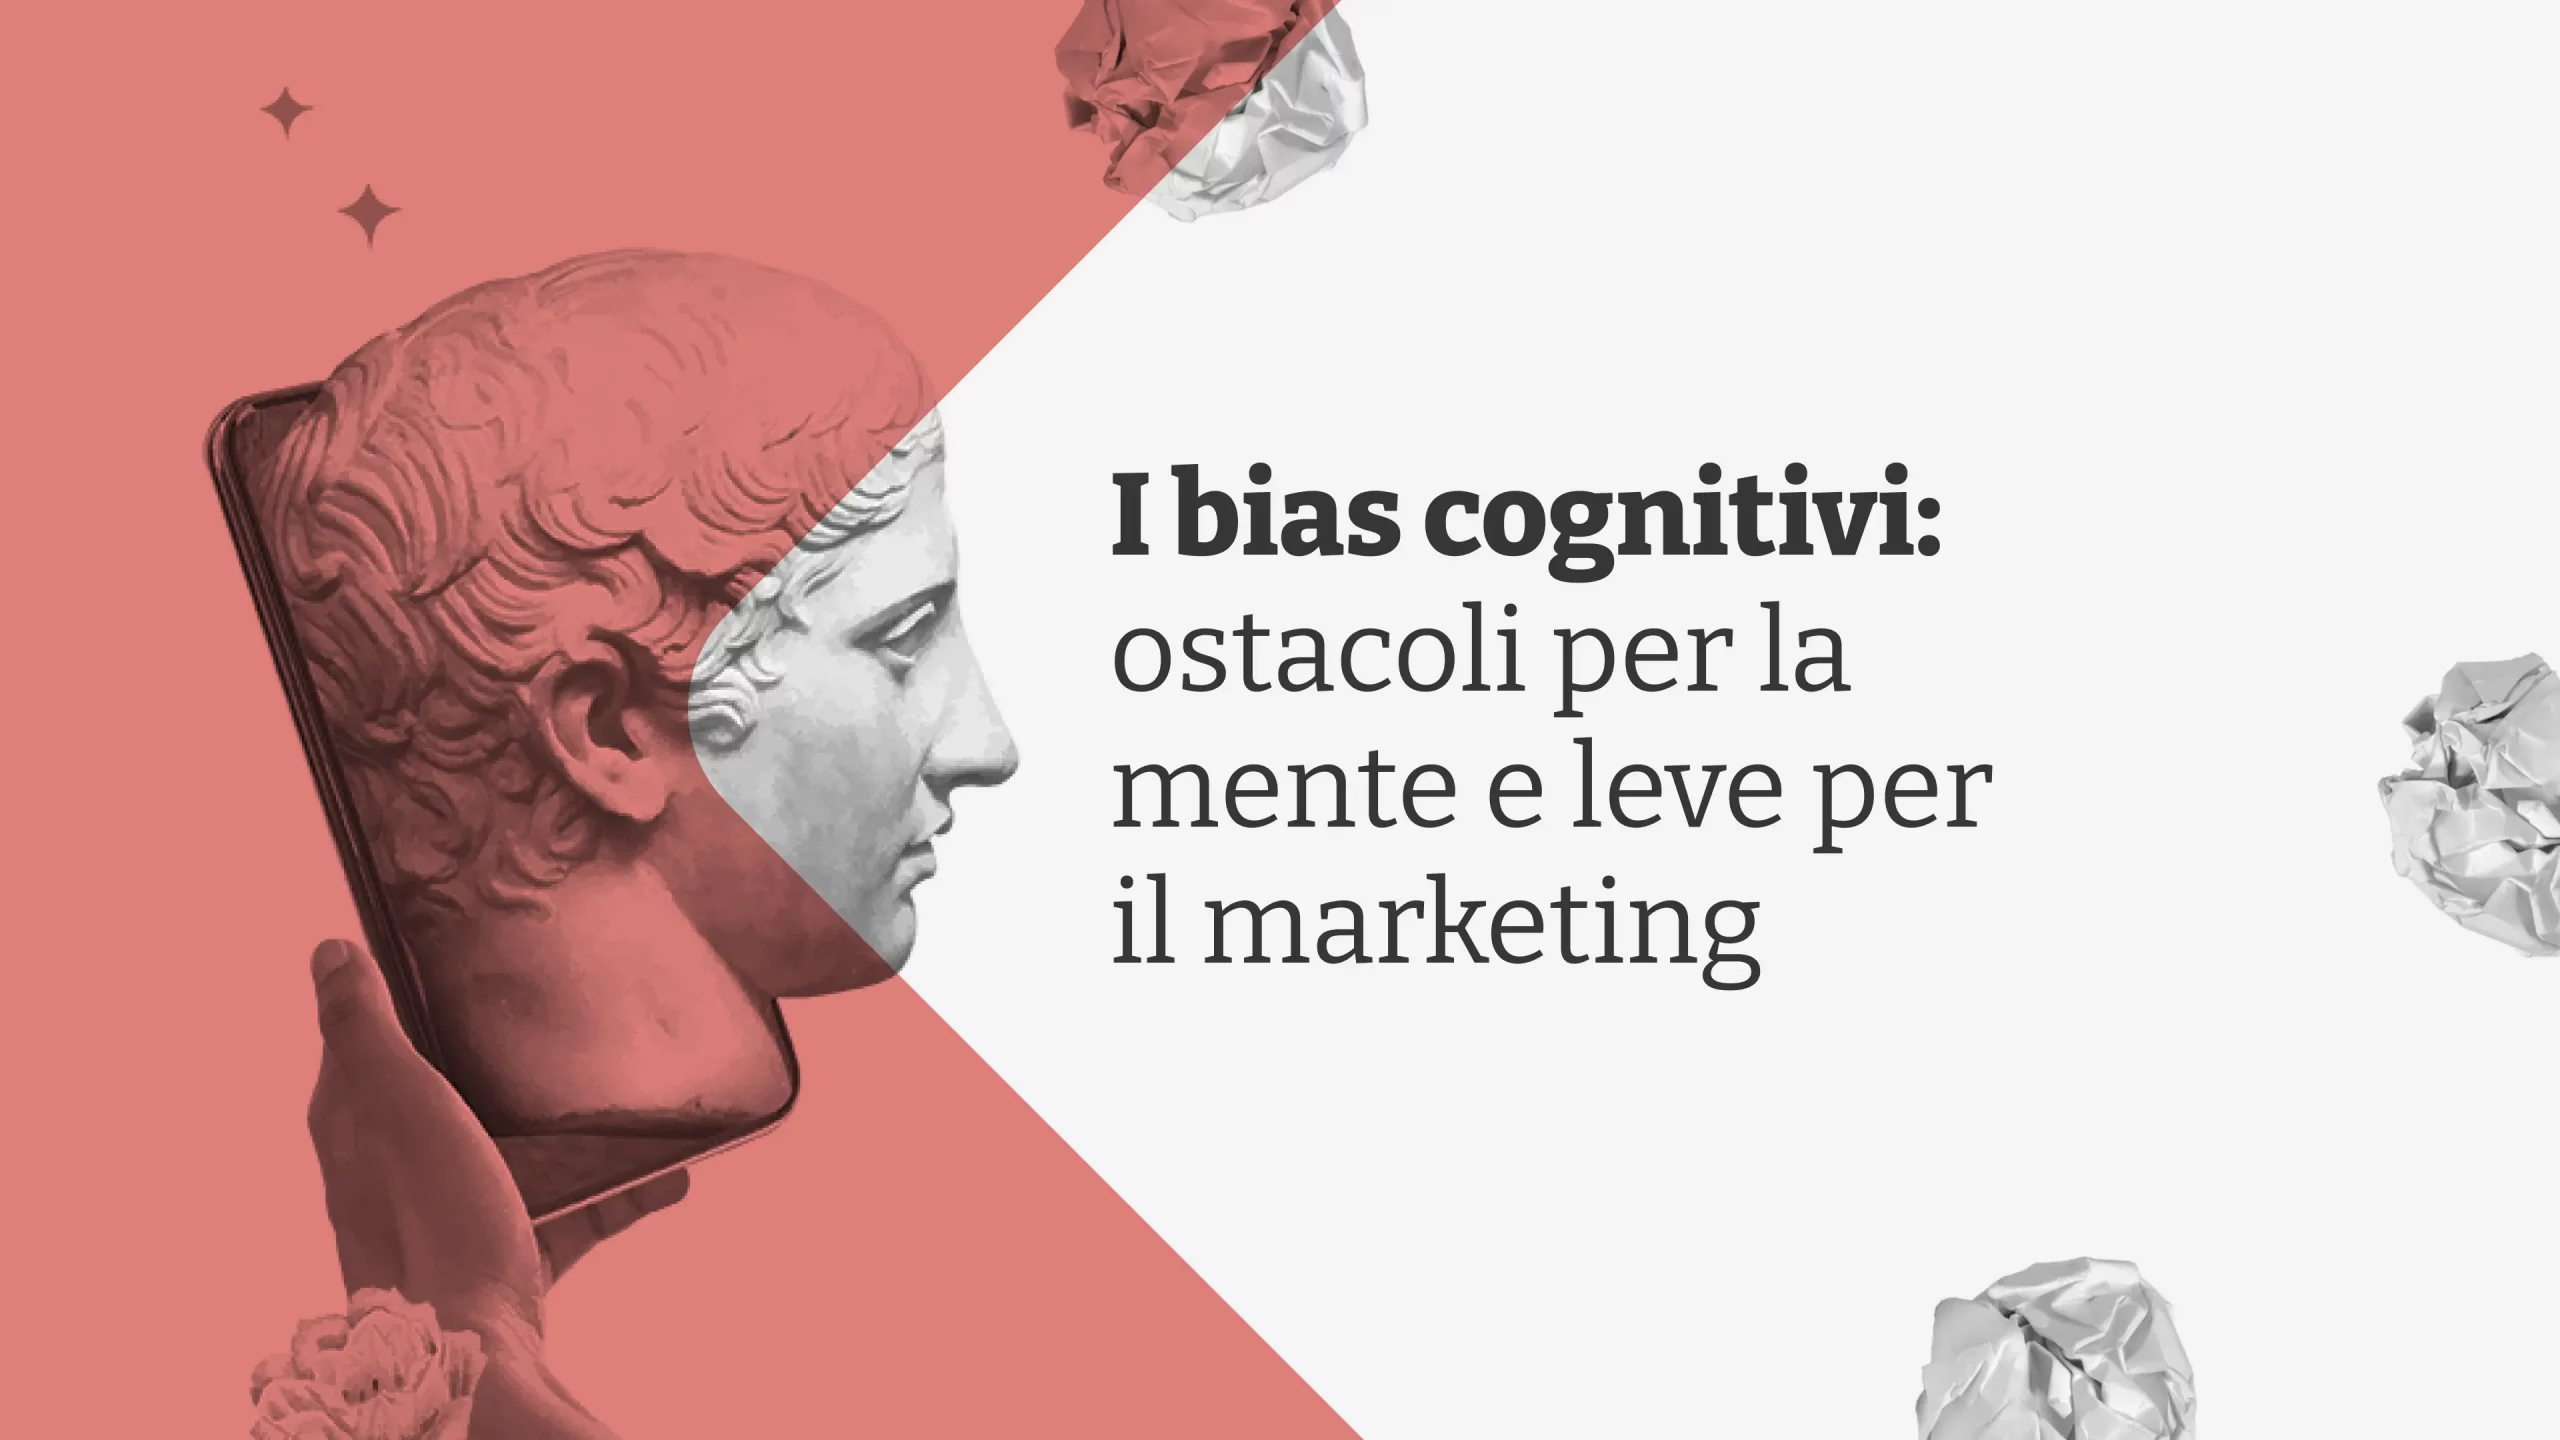 Immagine dell'articolo I bias cognitivi: ostacoli per la mente e leve per il marketing